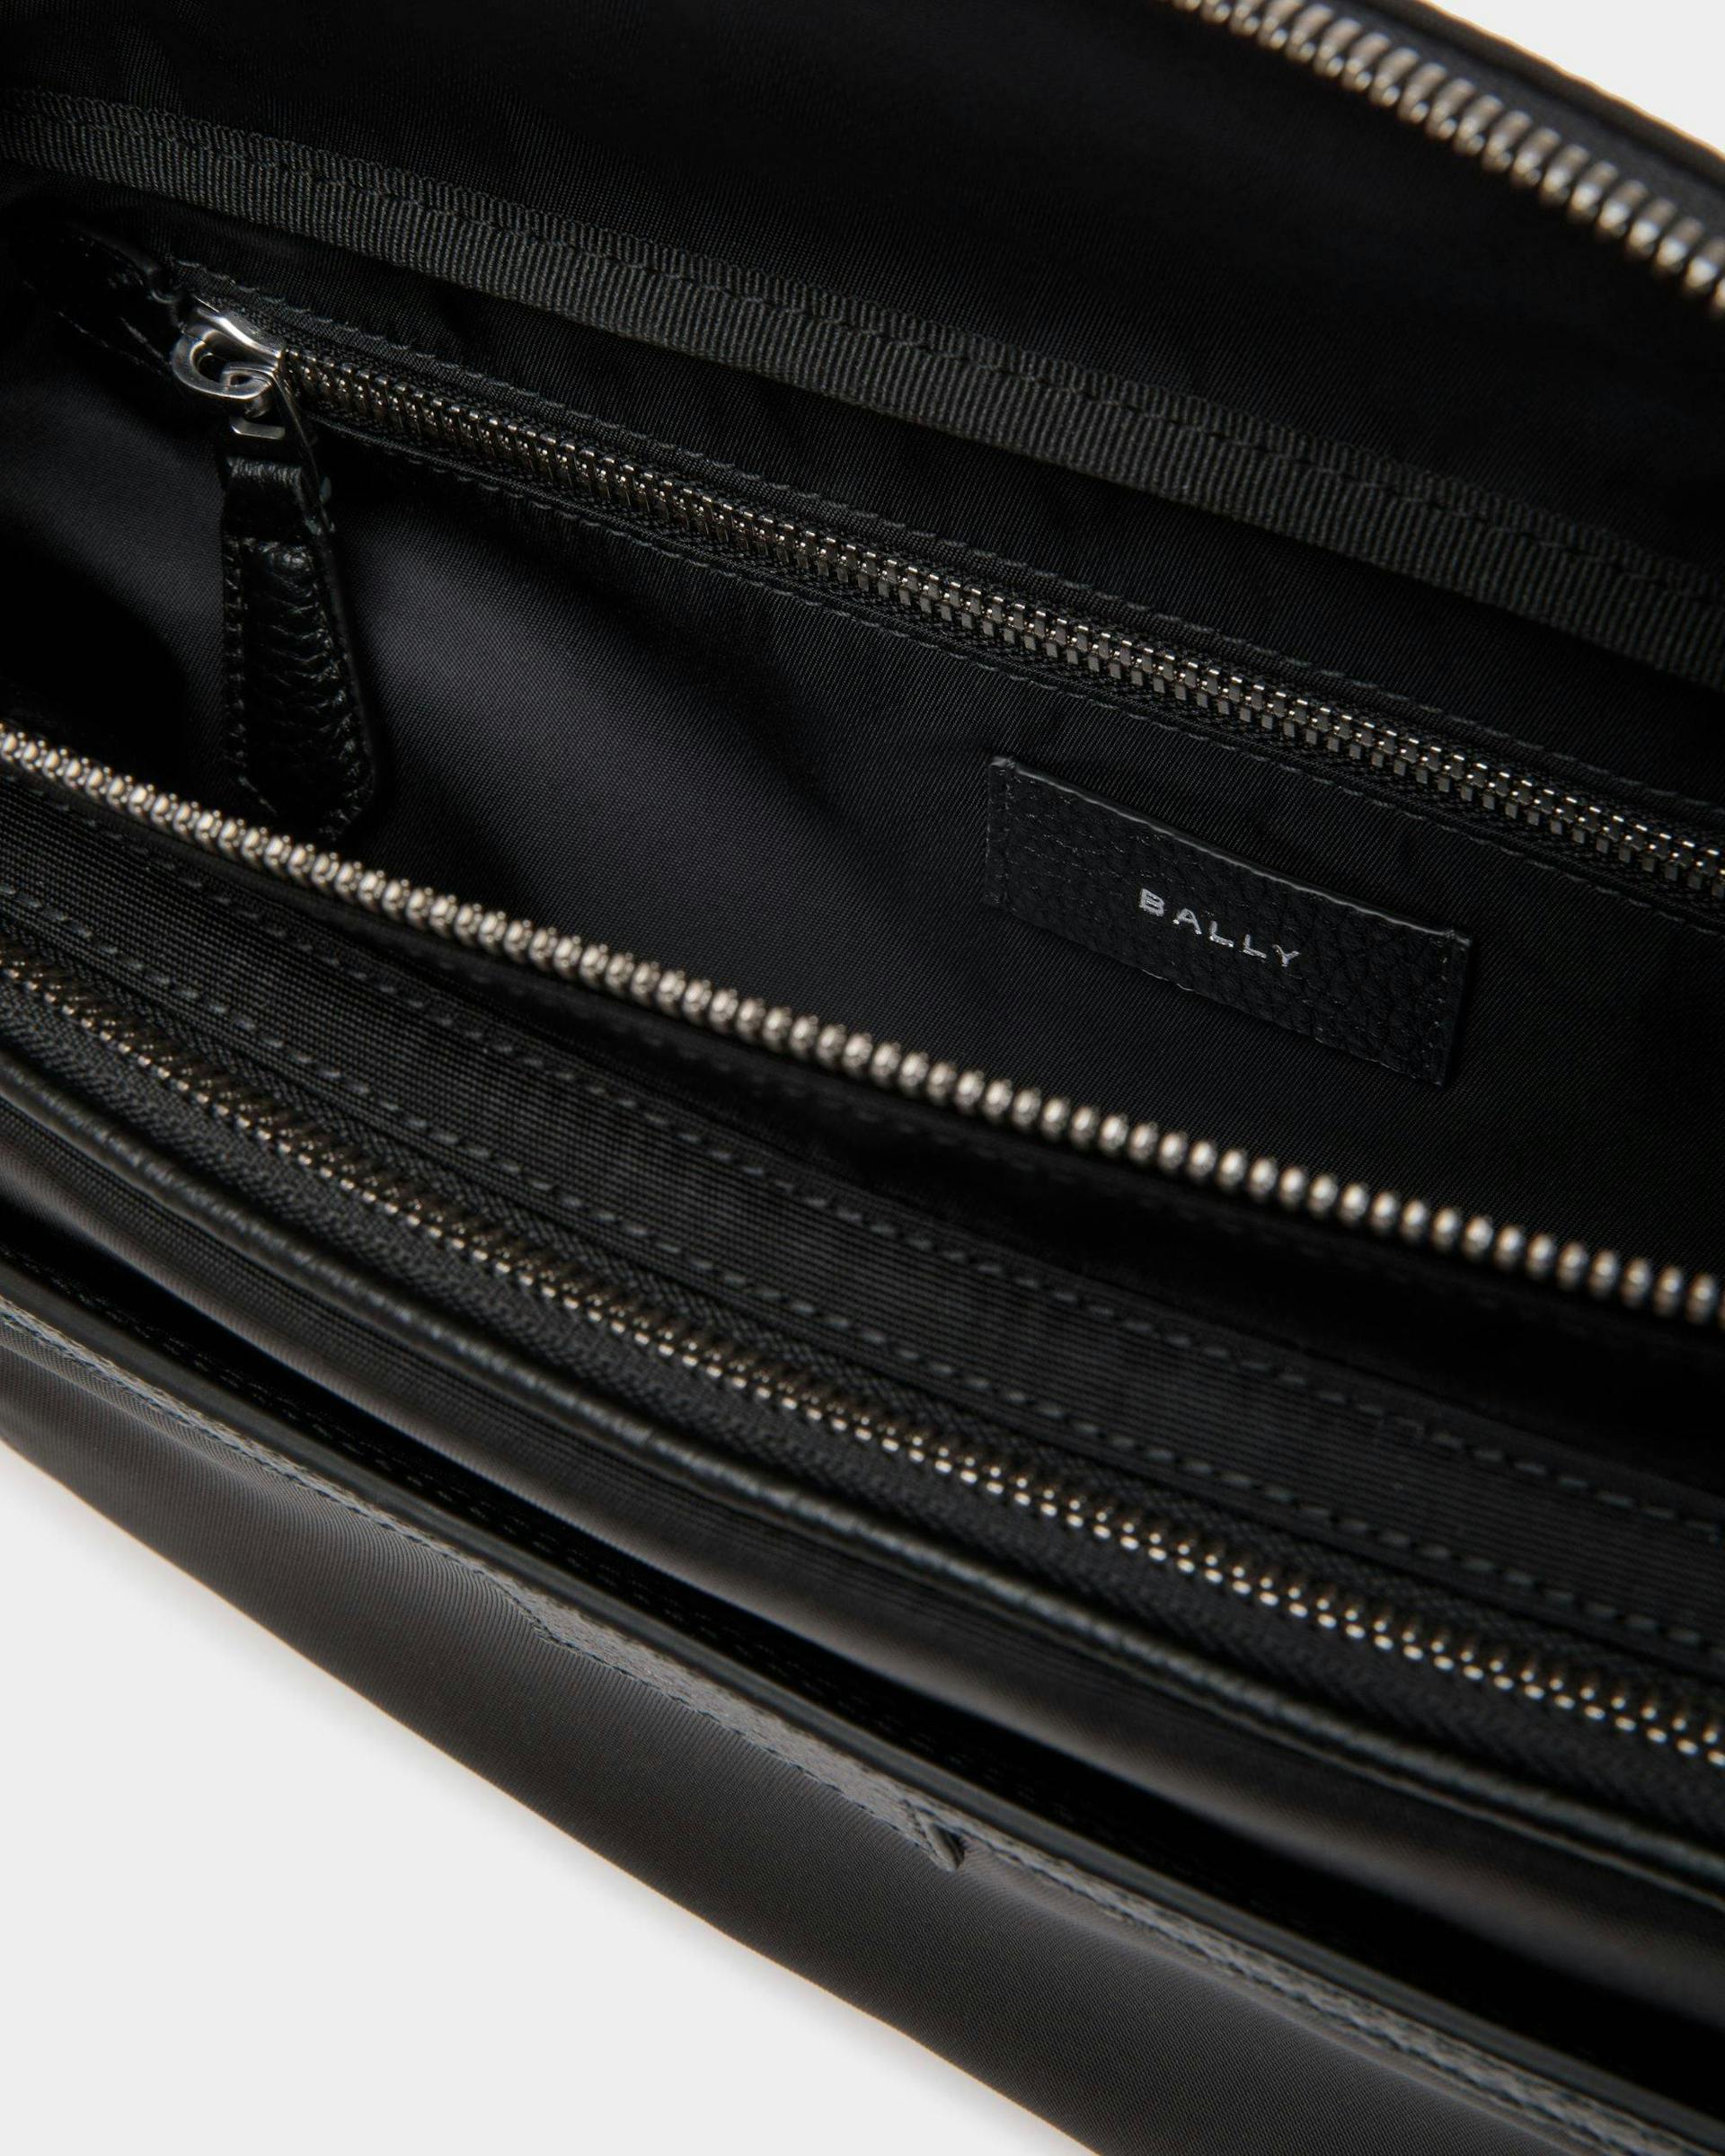 Men's Code Belt Bag in Black Nylon | Bally | Still Life Open / Inside